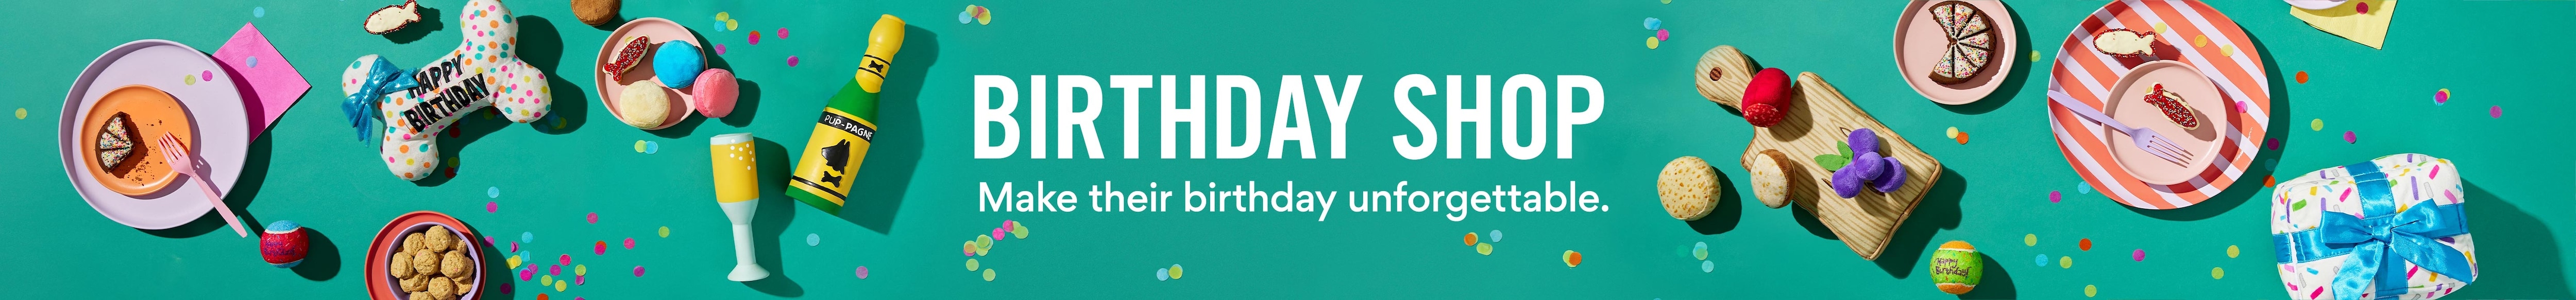 Birthday Shop. Make their birthday unforgettable. Shop Now.